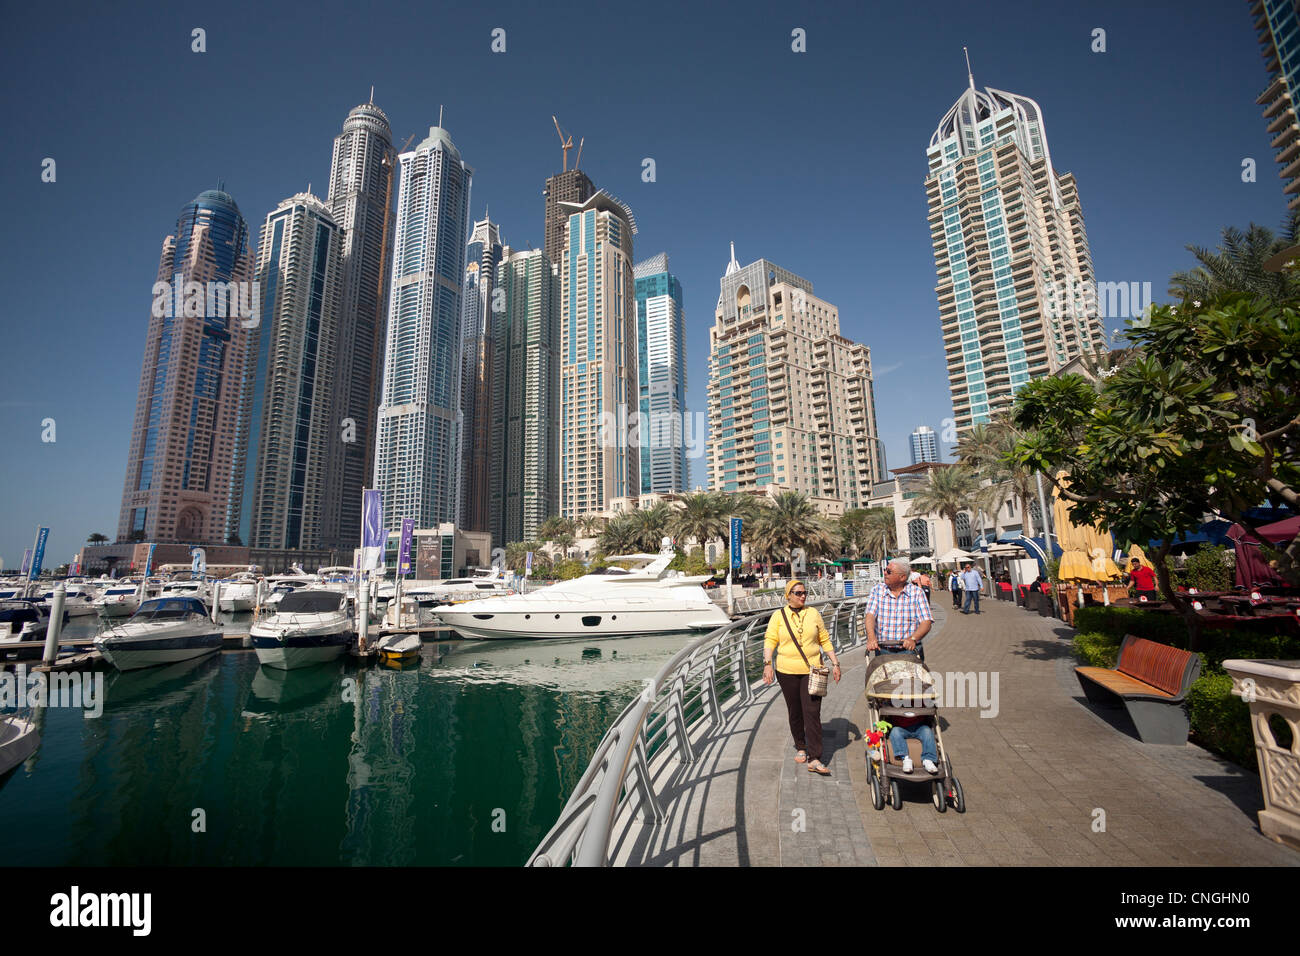 Die Wolkenkratzer des Bereichs "Dubai Marina" (Dubai - Vereinigte Arabische Emirate). Les Gratte-Ciel du quartier de "Dubaï Marina". Stockfoto